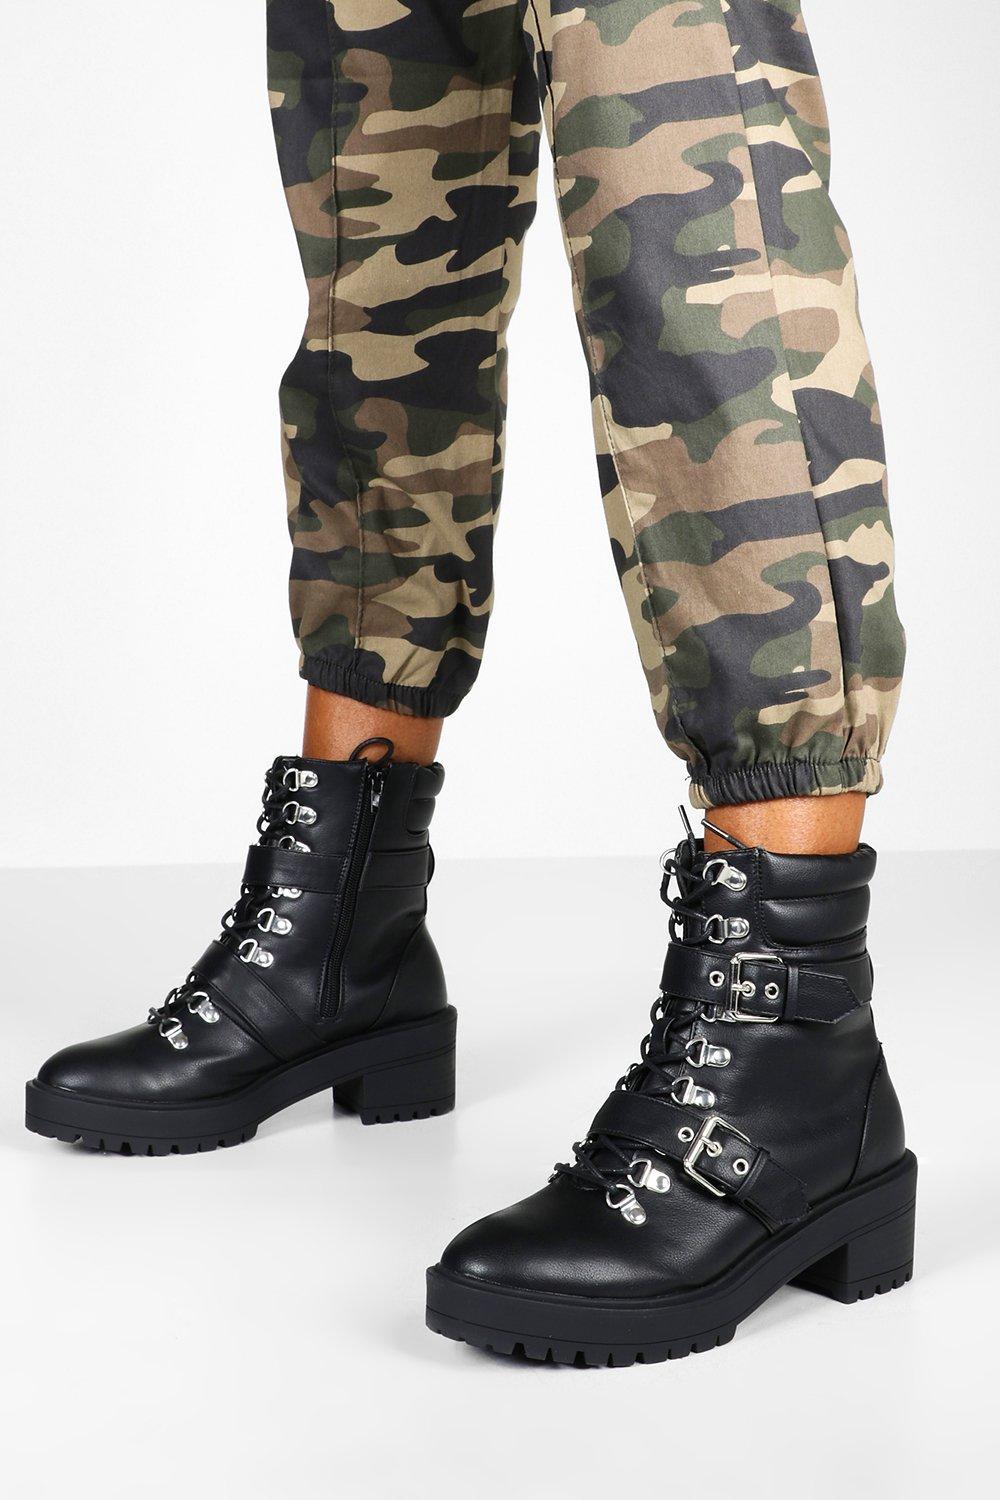 boohoo combat boots